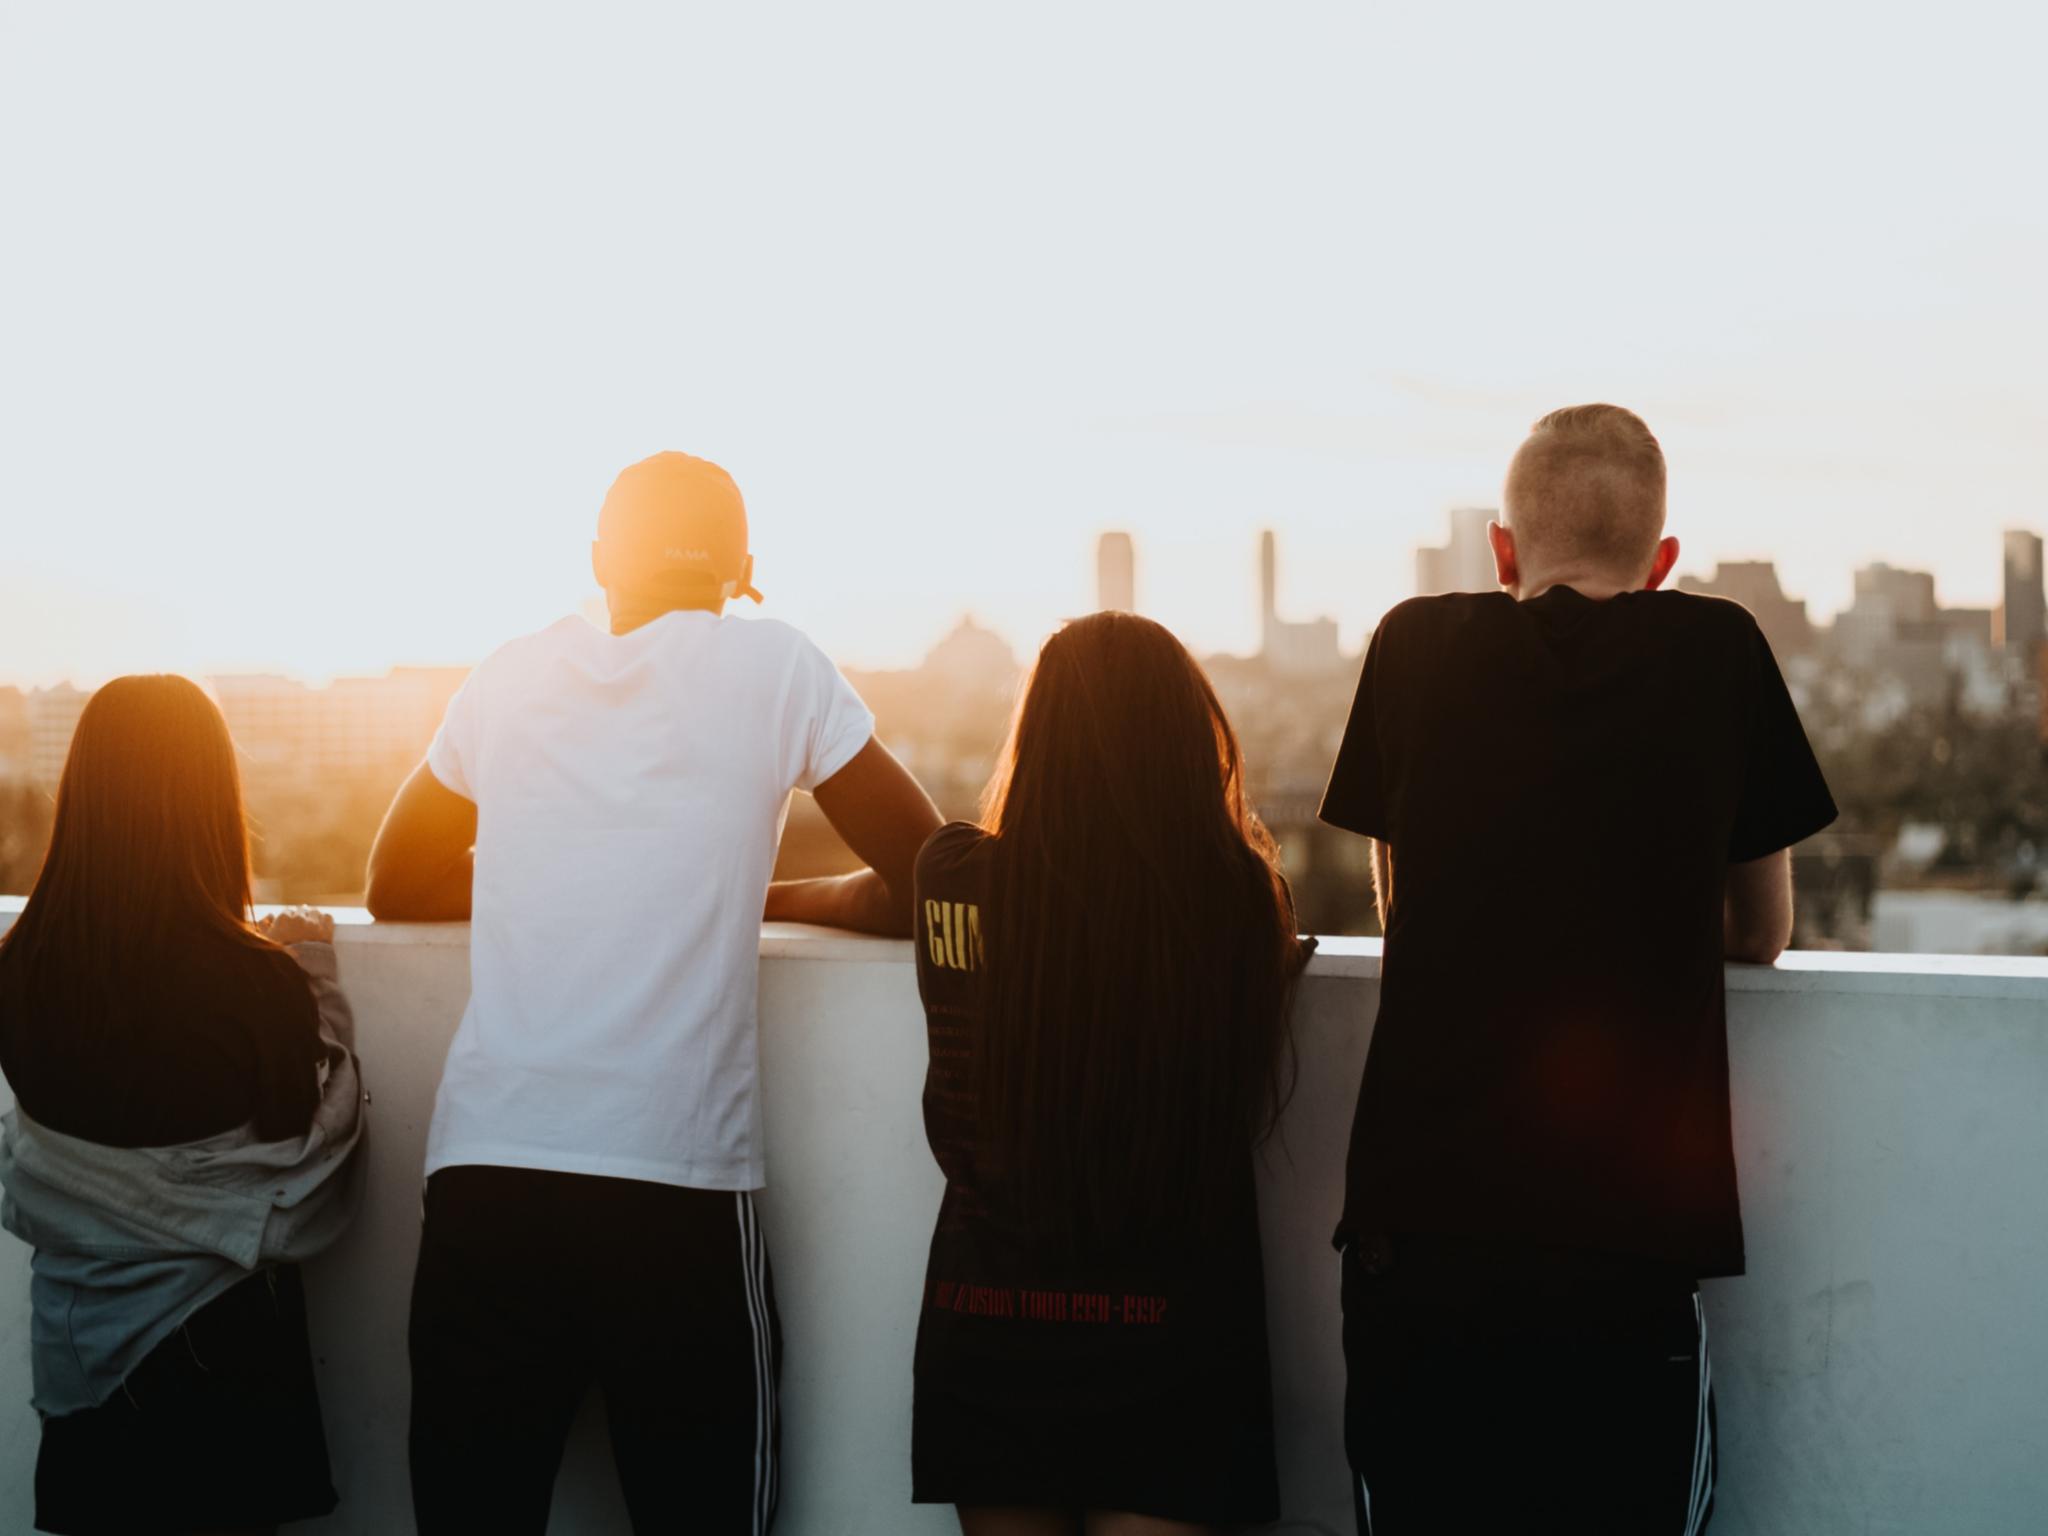 Man sieht vier Jugendliche von hinten, die sich in den Armen liegen. Sie stehen auf einem Hochhausdach und schauen in die Ferne, umgeben von warmem Licht der untergehenden Sonne.